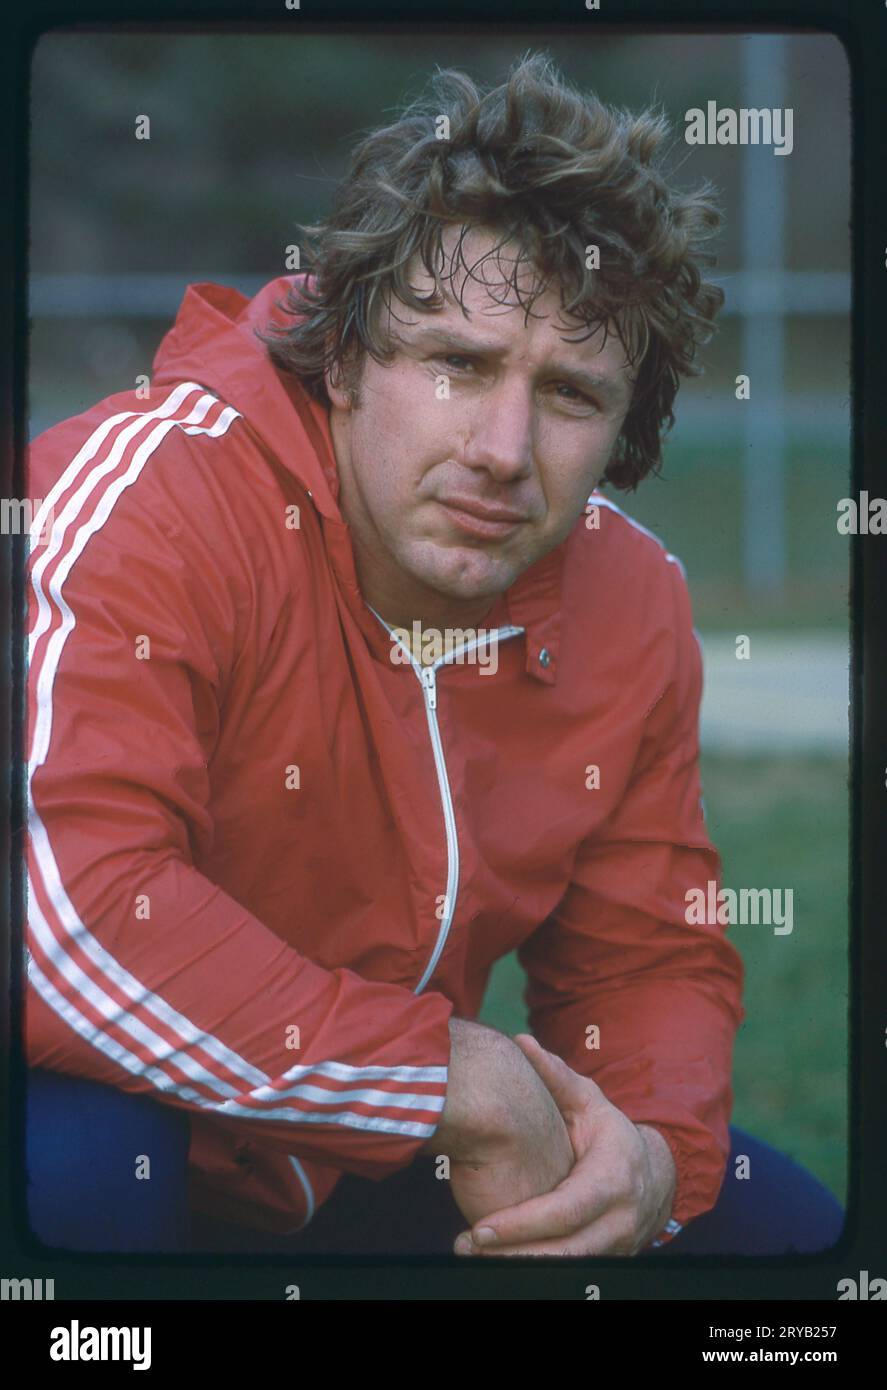 Ritratto in posa del grande al Oerter, quattro volte medaglia d'oro olimpica. A Long Island, New York, 1978, subito dopo un allenamento. Foto Stock